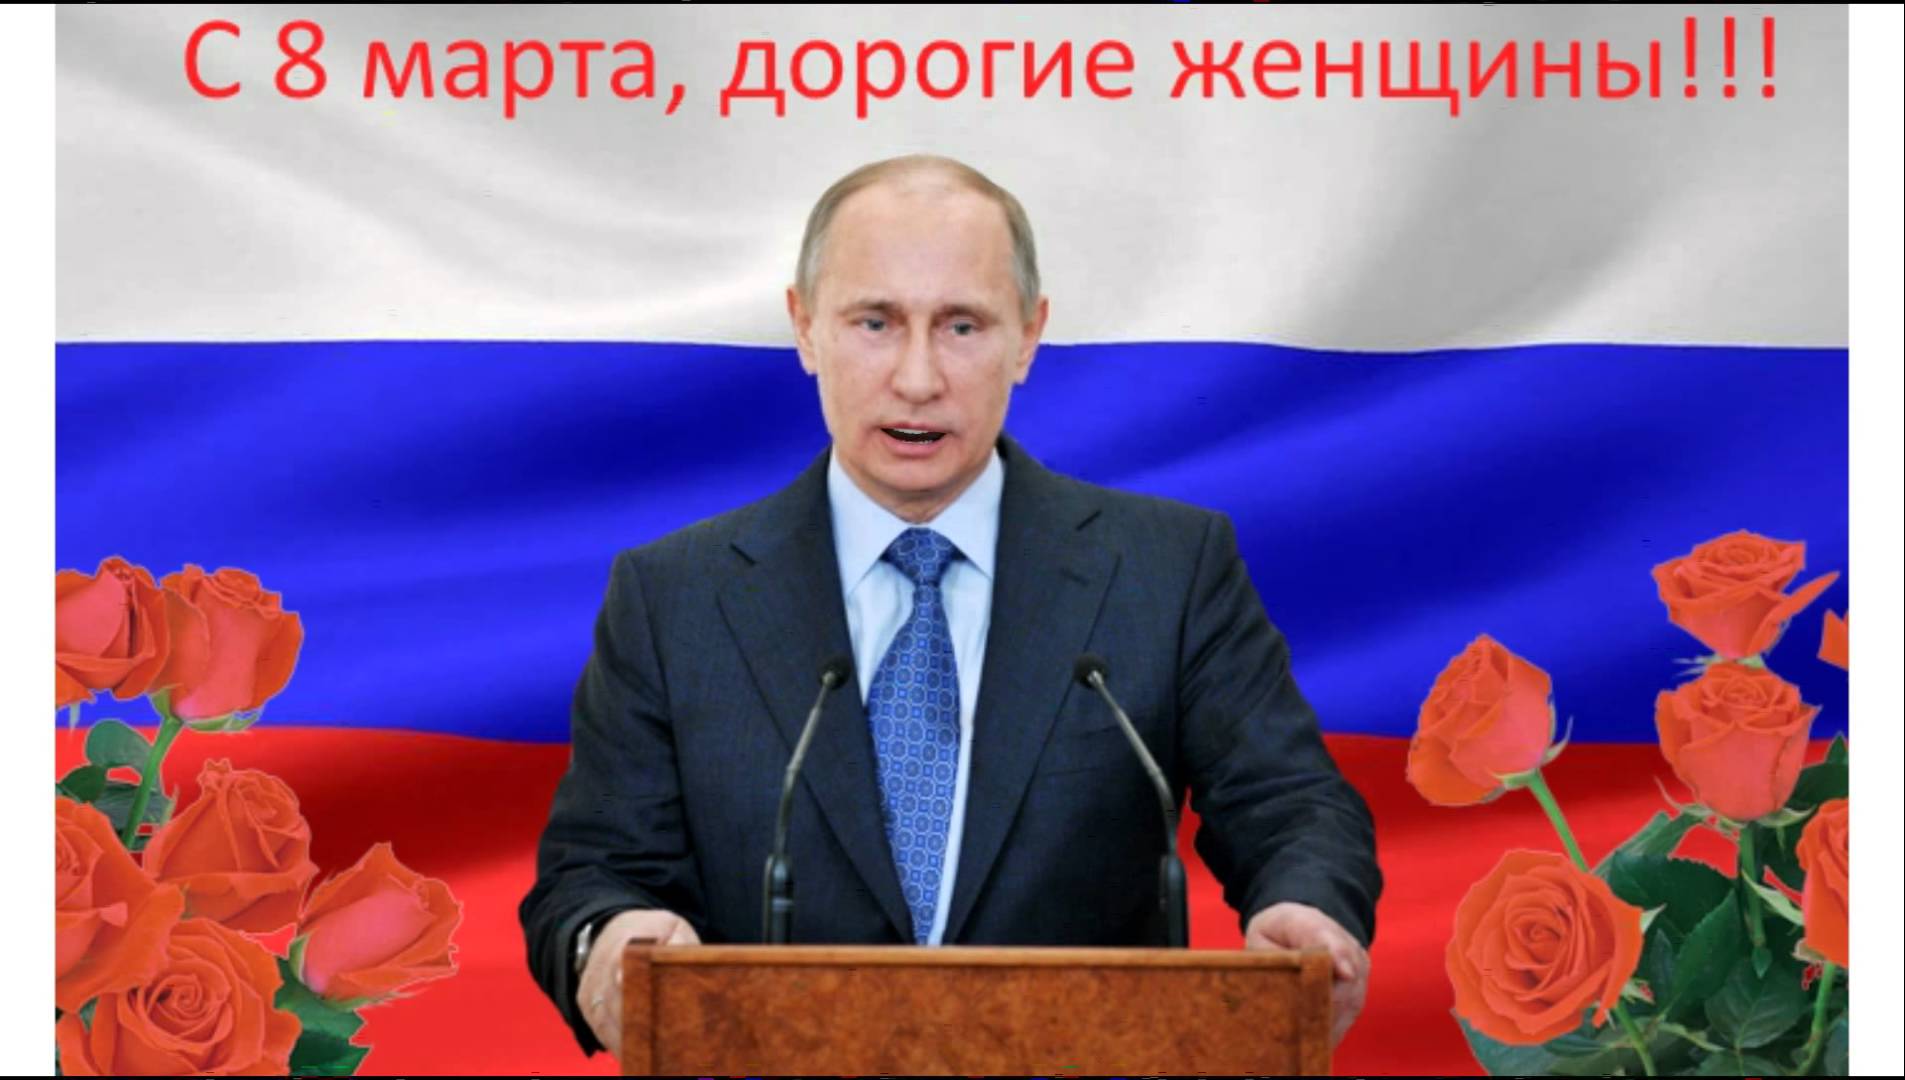 Путин поздравил женщин с 8 Марта стихотворением Андрея Дементьева - Москва 24!!!!!!